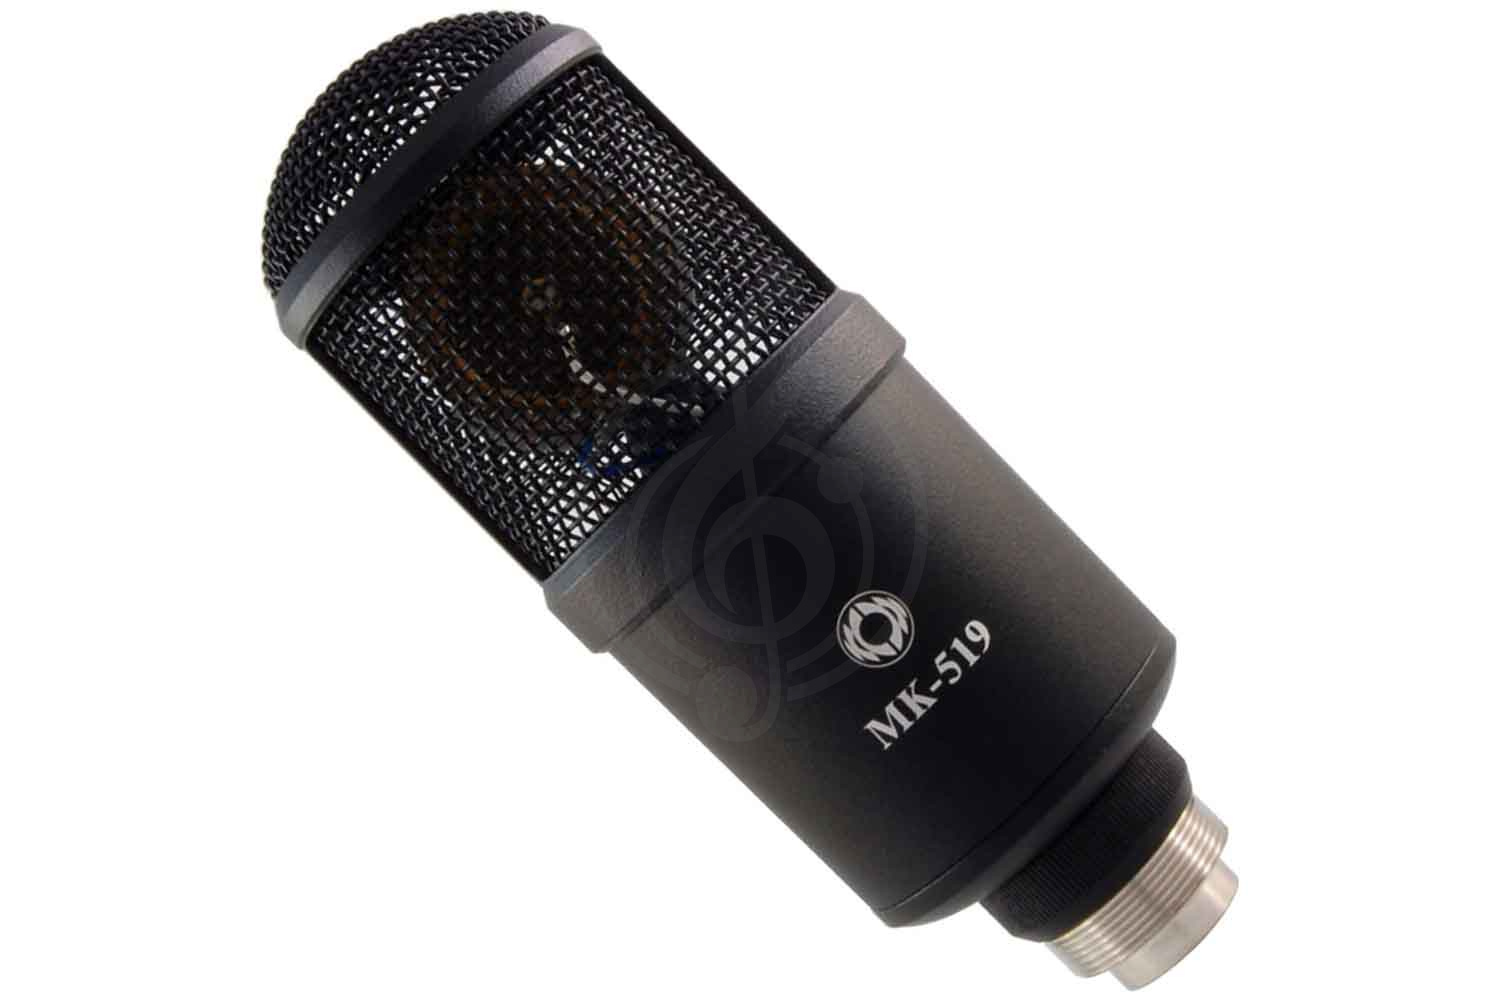 Конденсаторный студийный микрофон Конденсаторные студийные микрофоны Октава Октава МК-519-b - студийный конденсаторный микрофон МК-519-b - фото 3